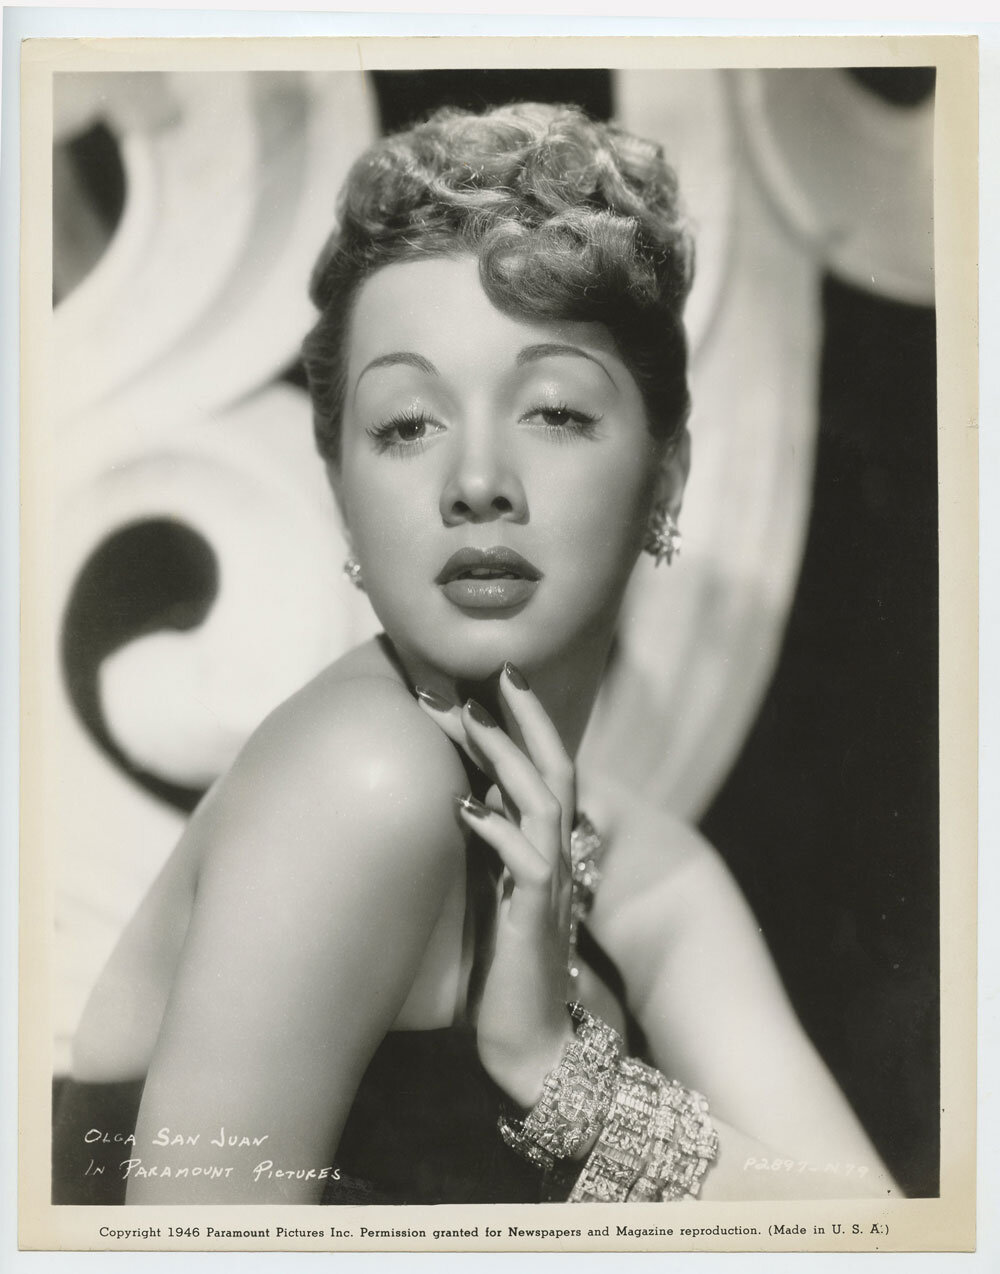 Olga San Juan Photo 1946 Paramount Pictures Publicity Portrait Original Vintage